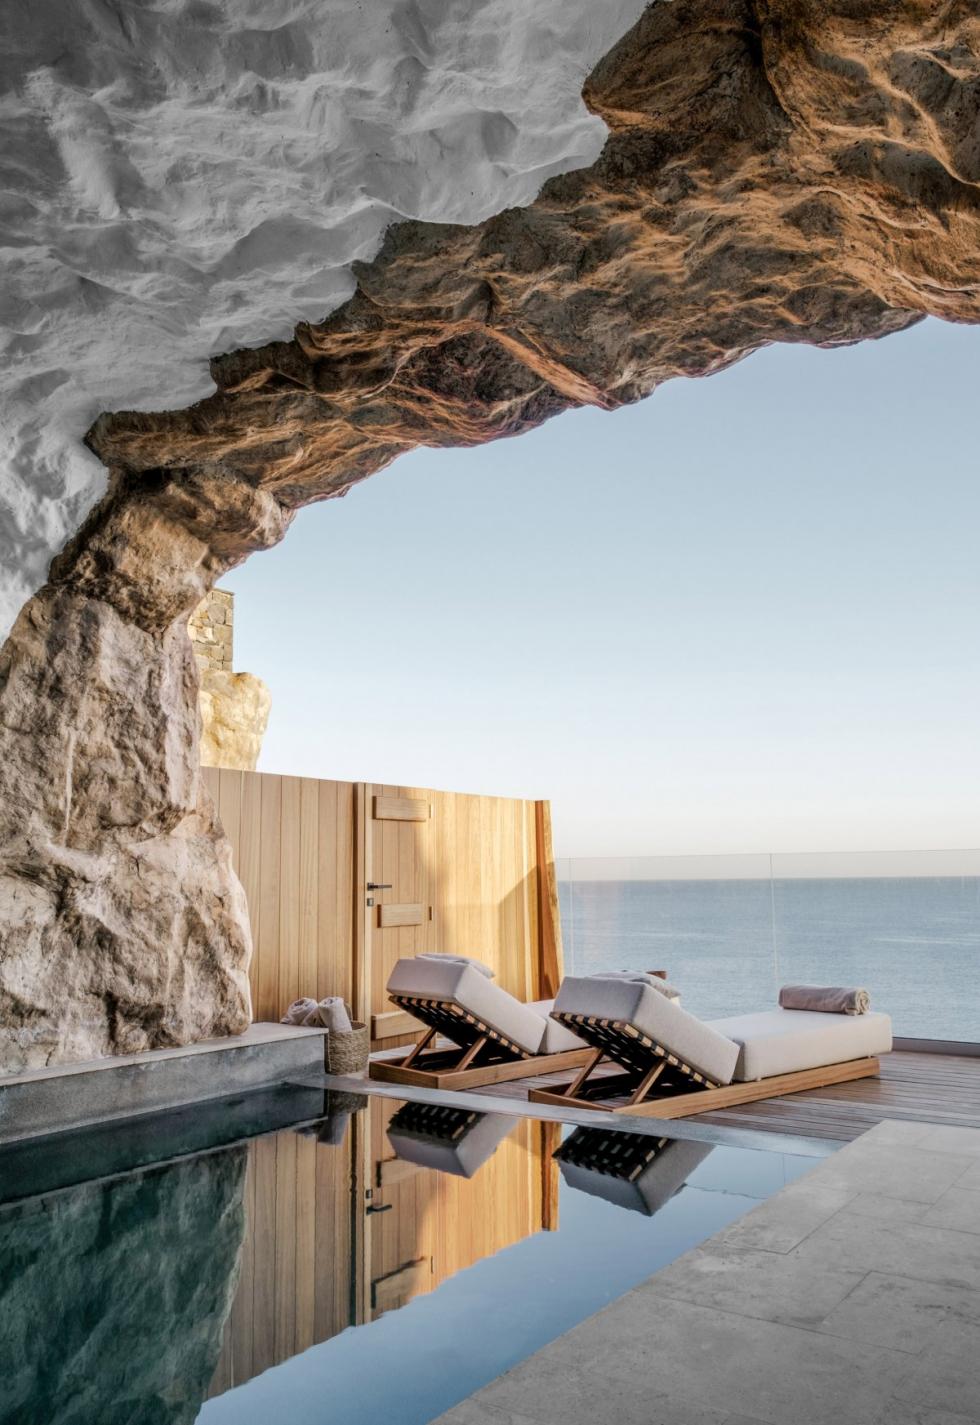 Acro Suites Resort: természet ihlette luxus wellneskomplexum Görögországban